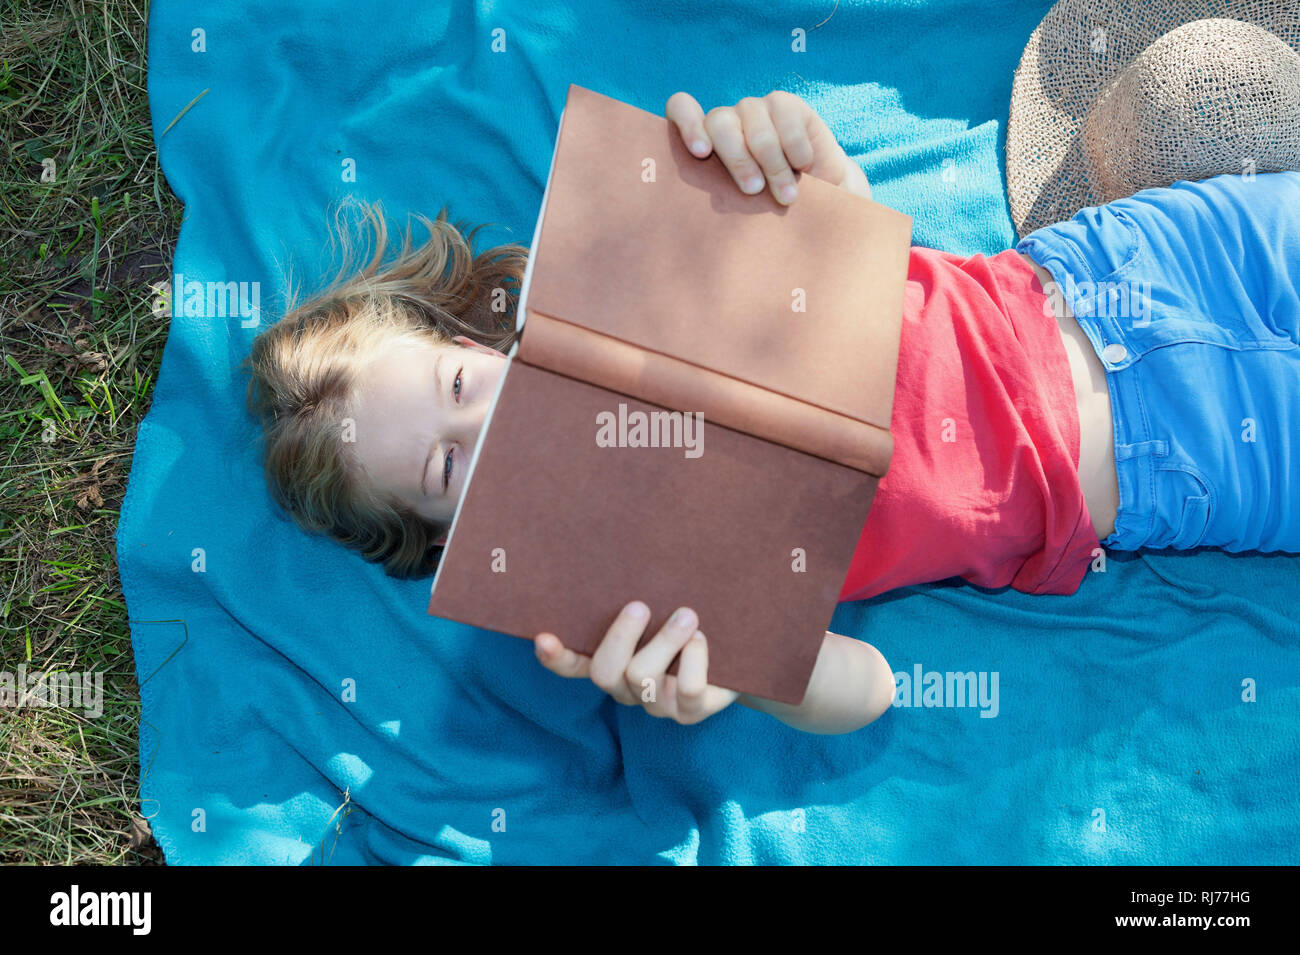 Neunjähriges Mädchen liegt auf einer Decke und liest ein Buch Stock Photo